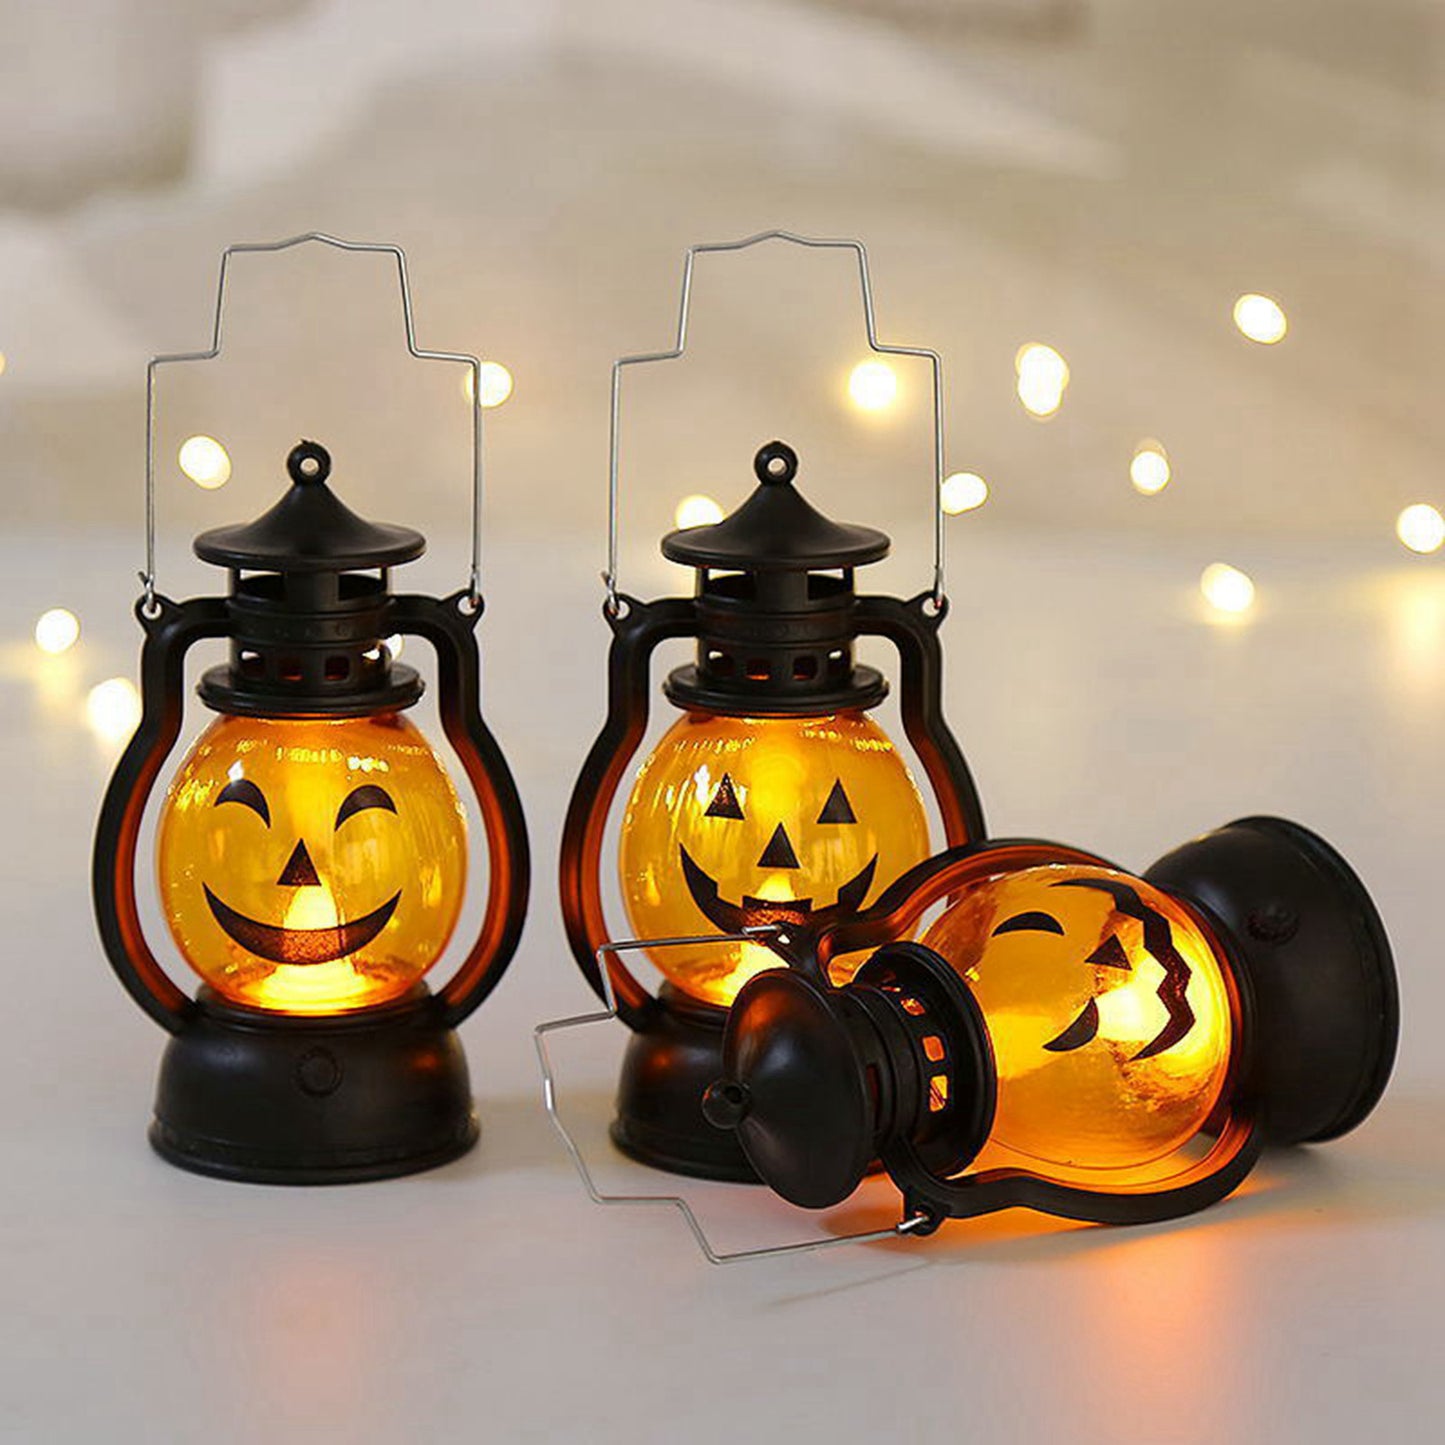 Pumpkin Lantern Halloween Decoration Type Smiling Night Lantern